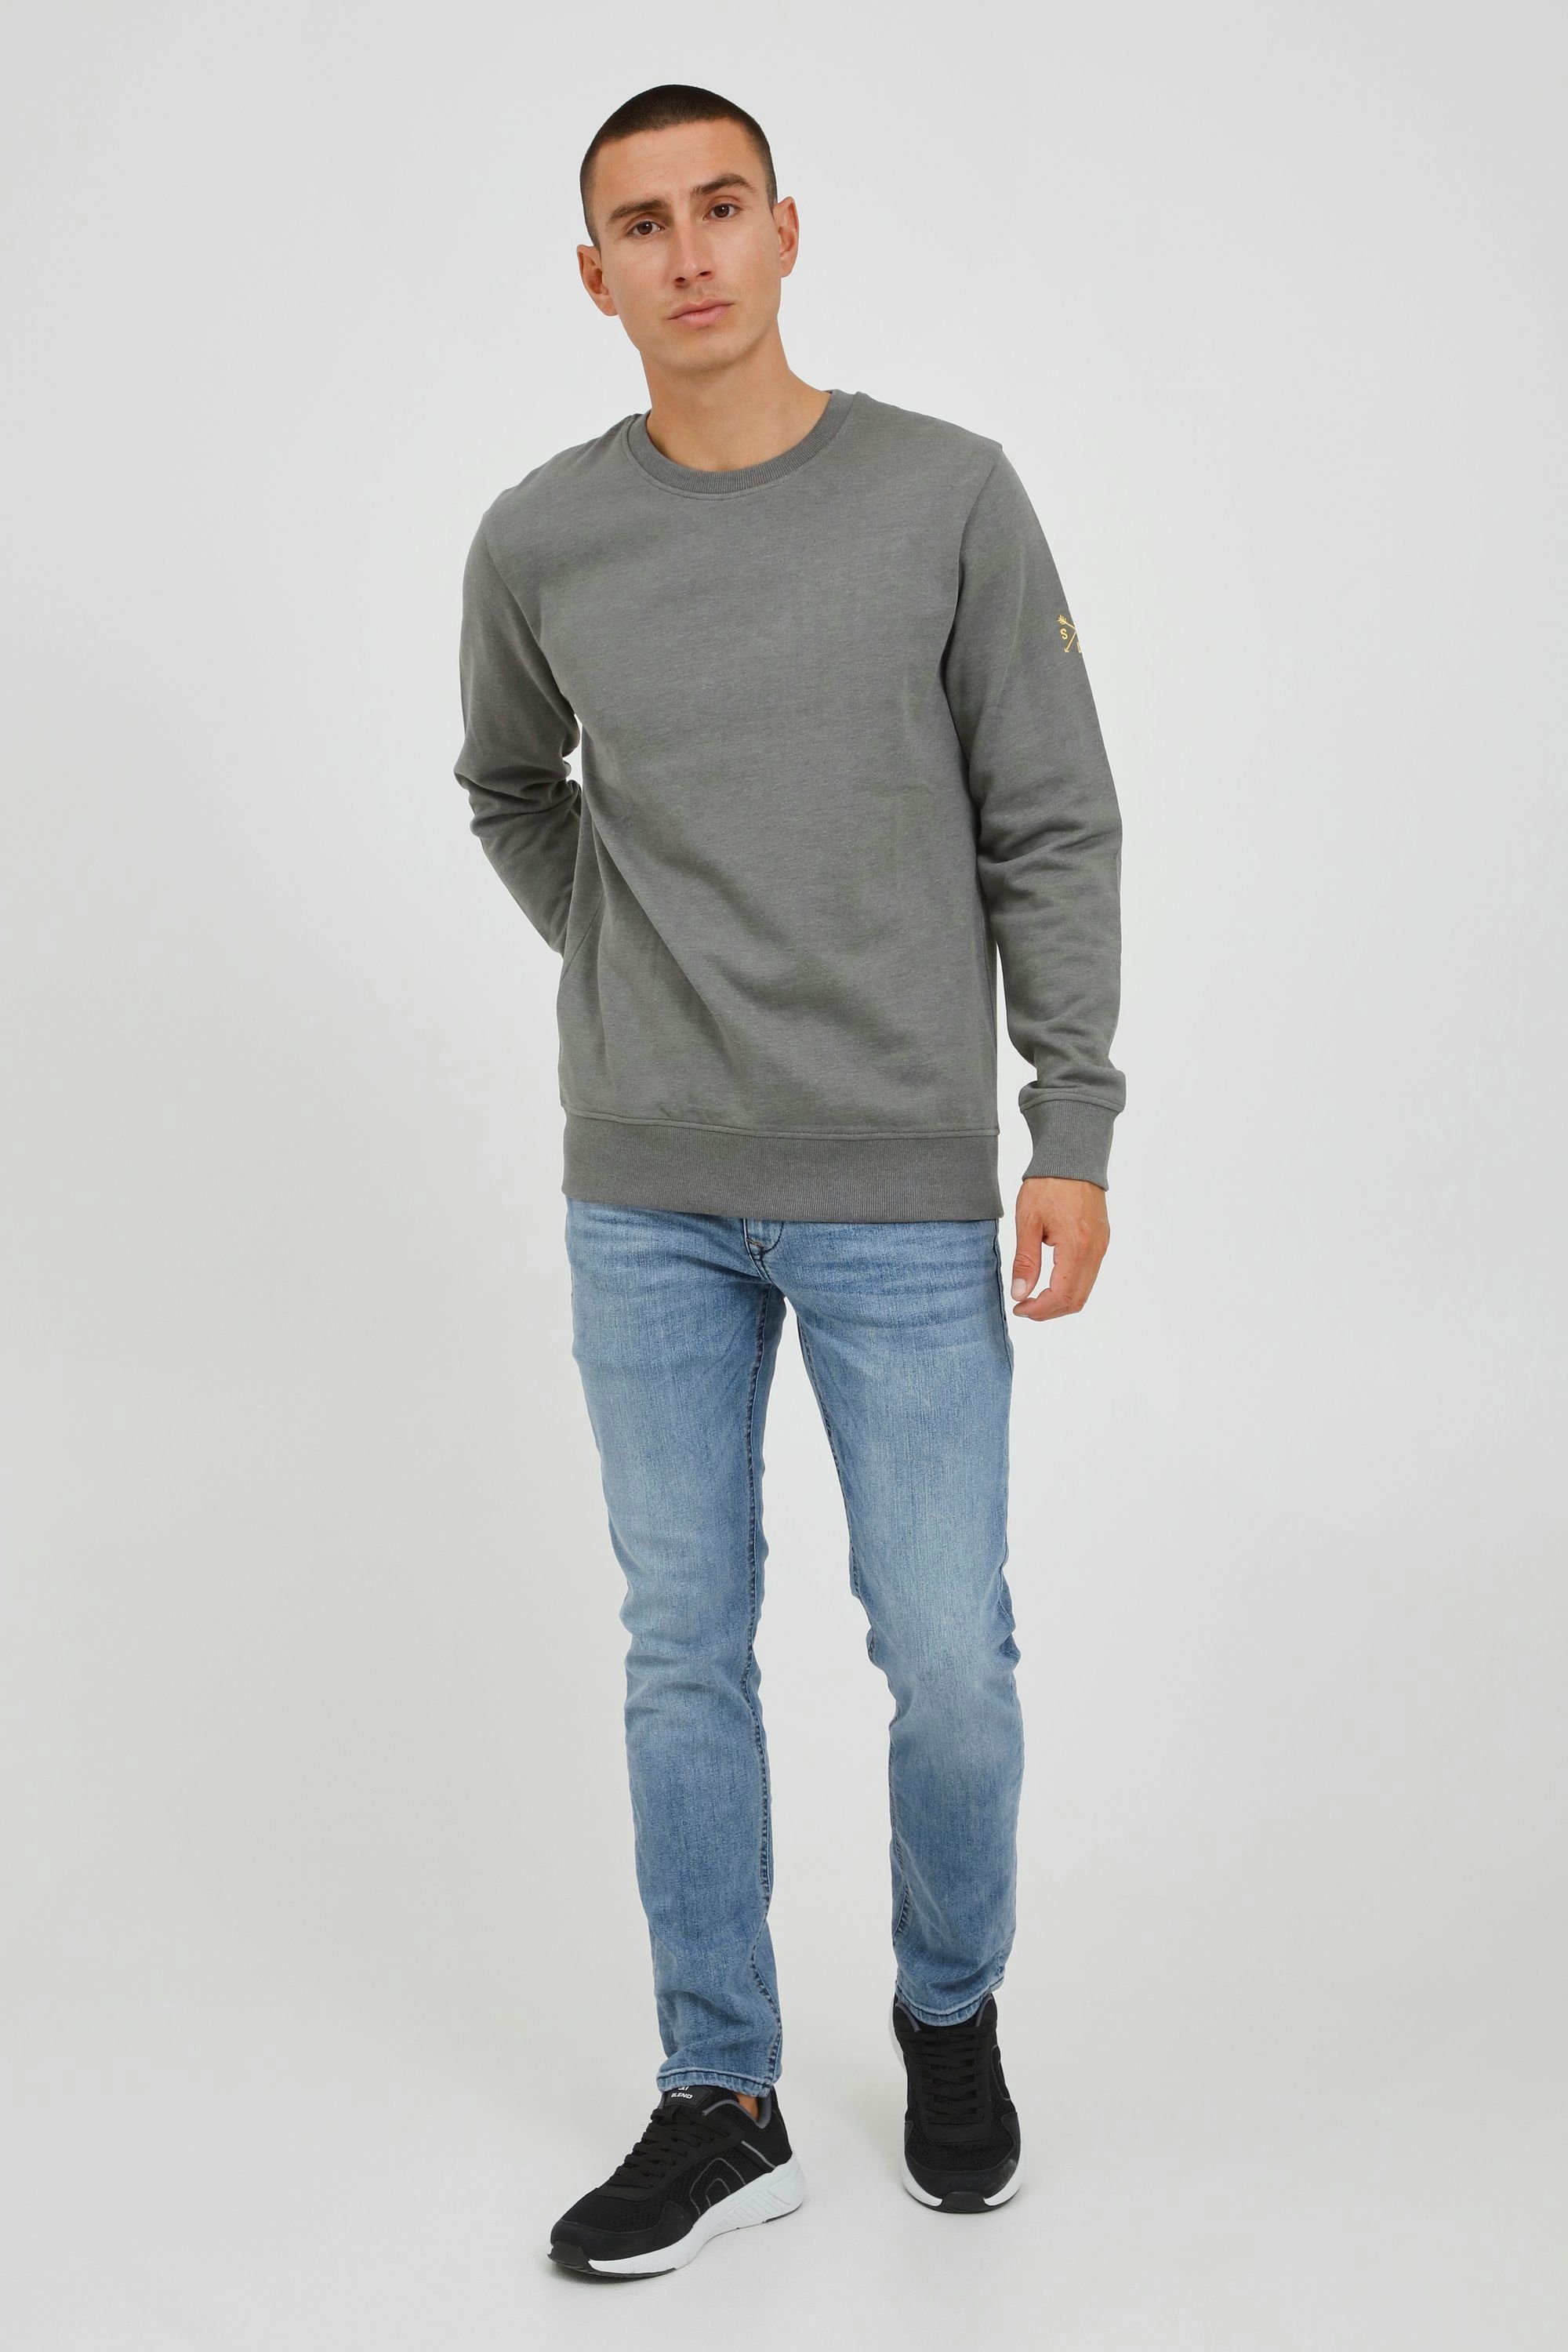 Solid Sweatshirt mit SDKani Sweatshirt Rundhalsausschnitt